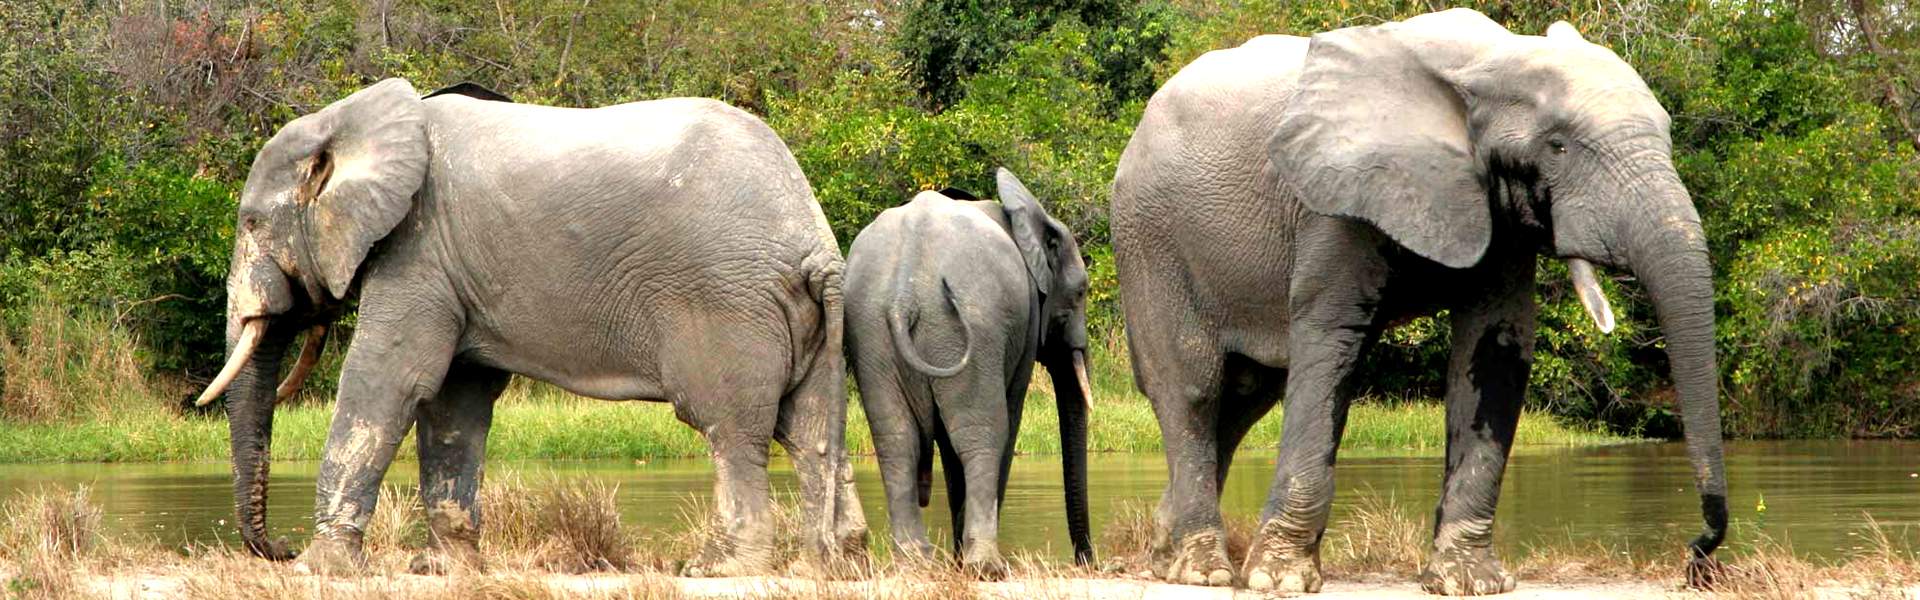 加纳旅游自然动物景观——大象